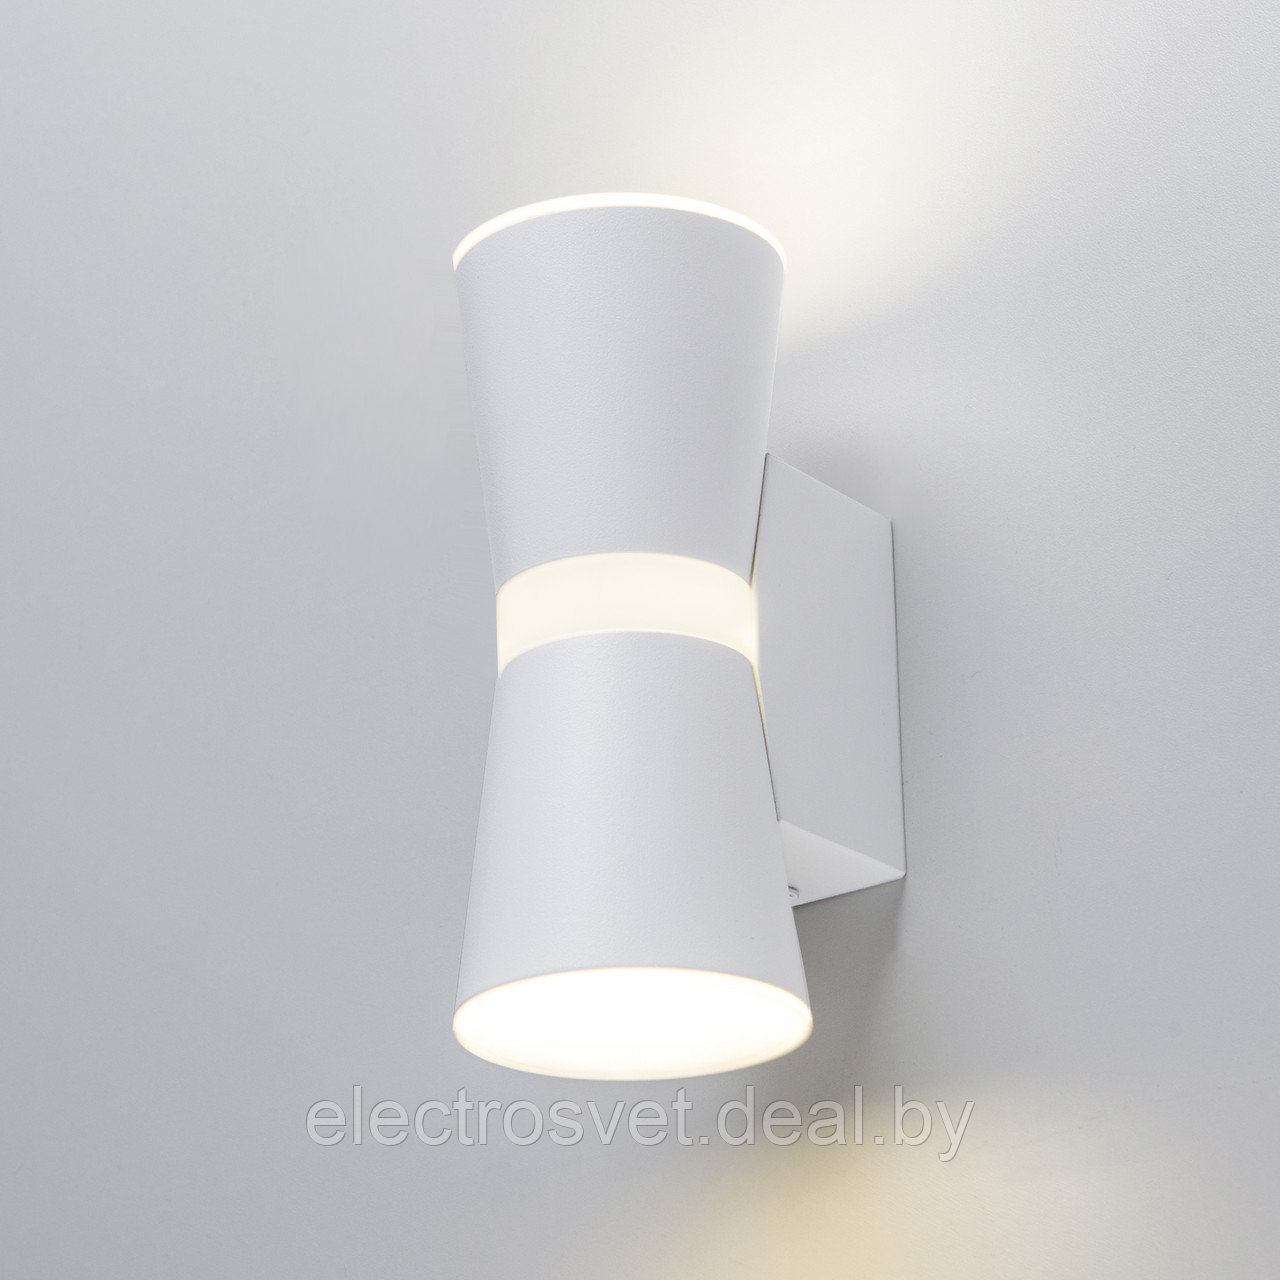 Viare LED белый настенный светодиодный светильник